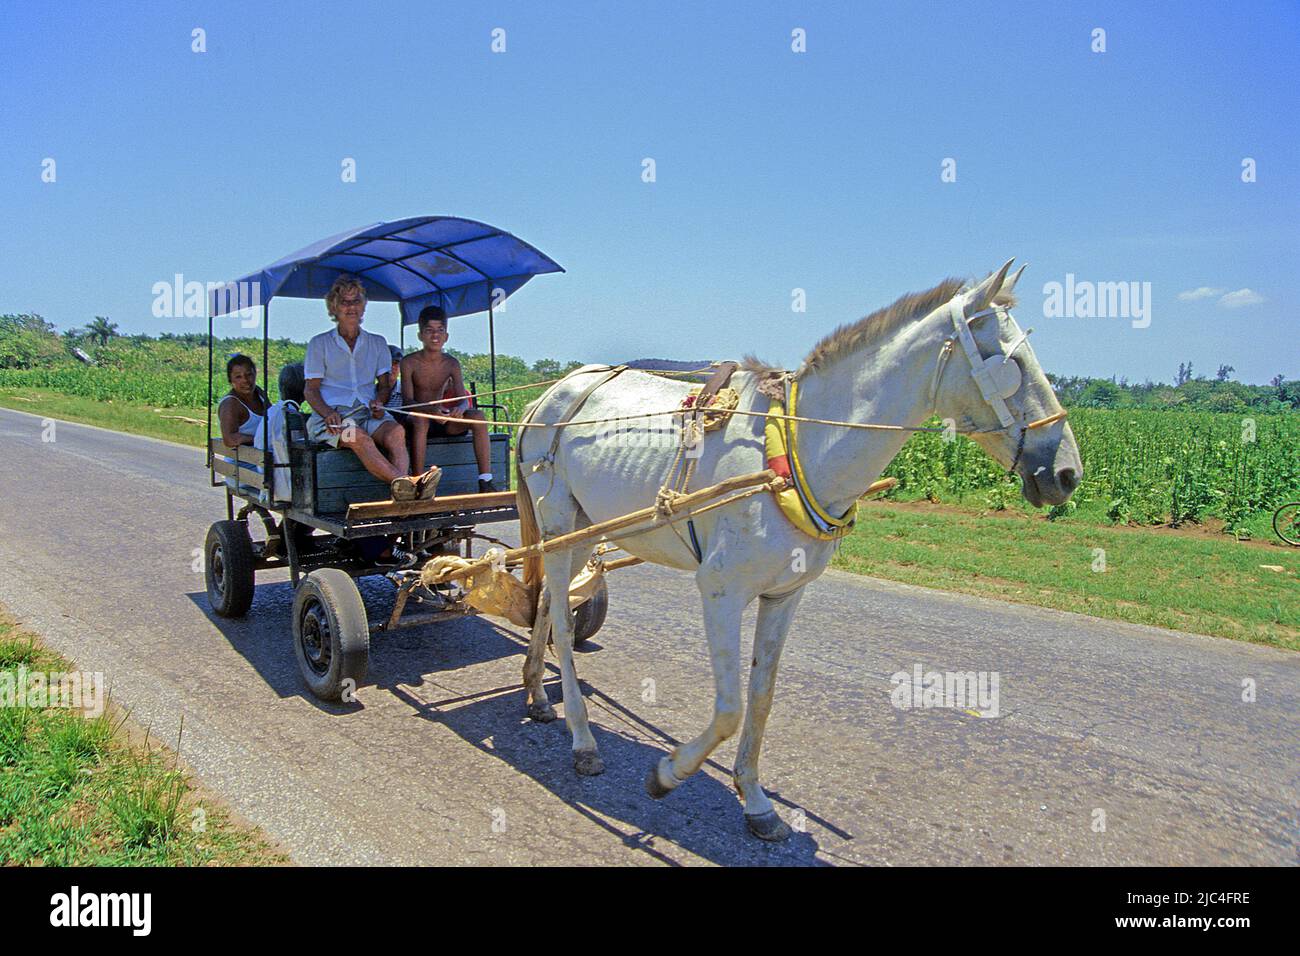 Pueblo cubano en carruaje tirado por caballos, transporte popular, Santa Lucía, Cuba, Caribe Foto de stock